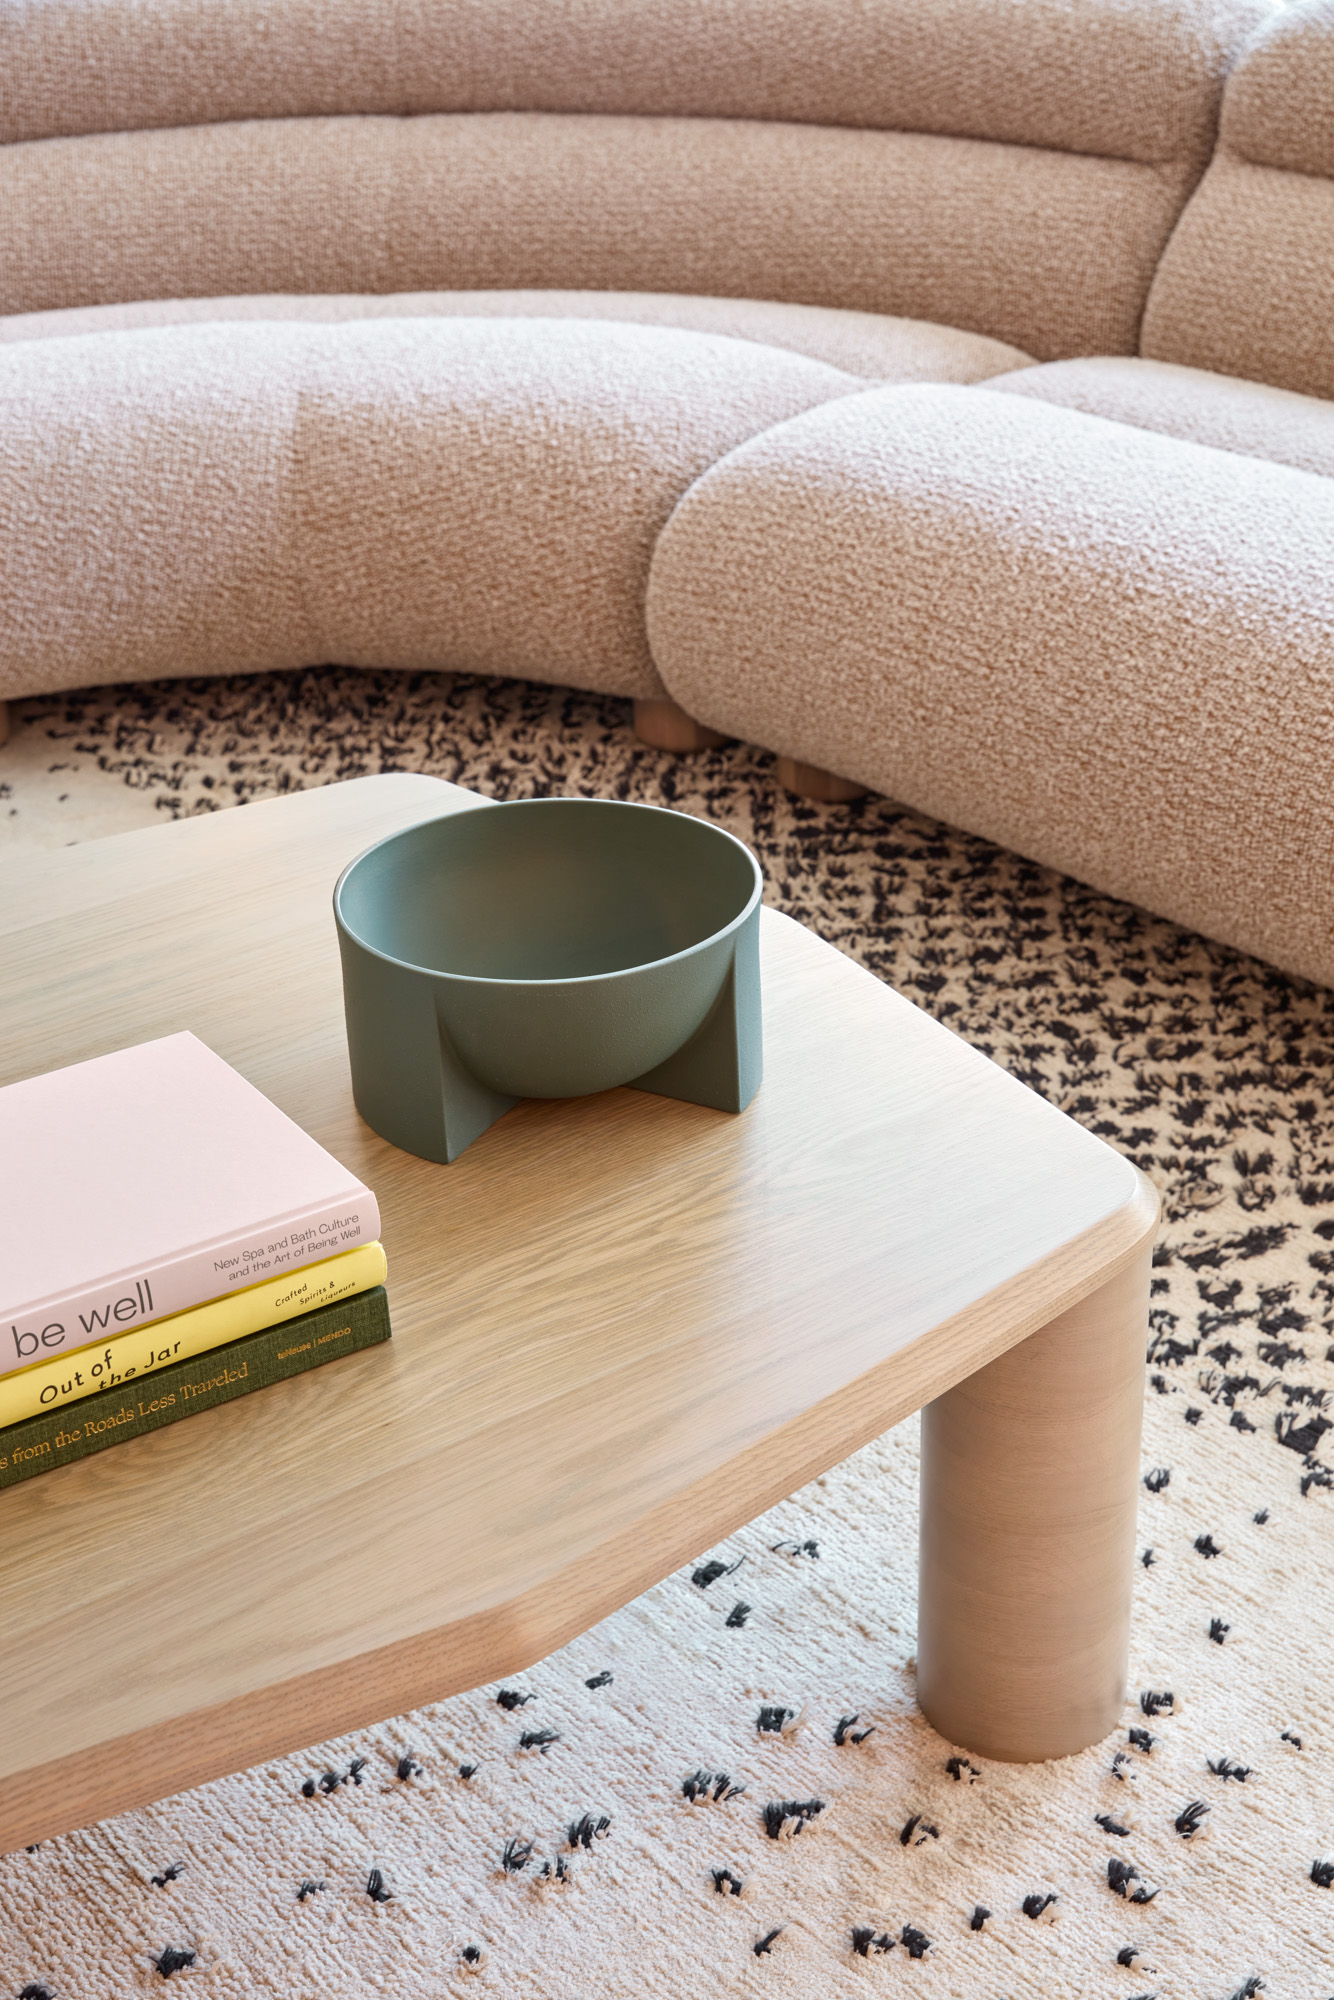 Arte coffee table, Valley modular sofa, Spreckels floor rug.